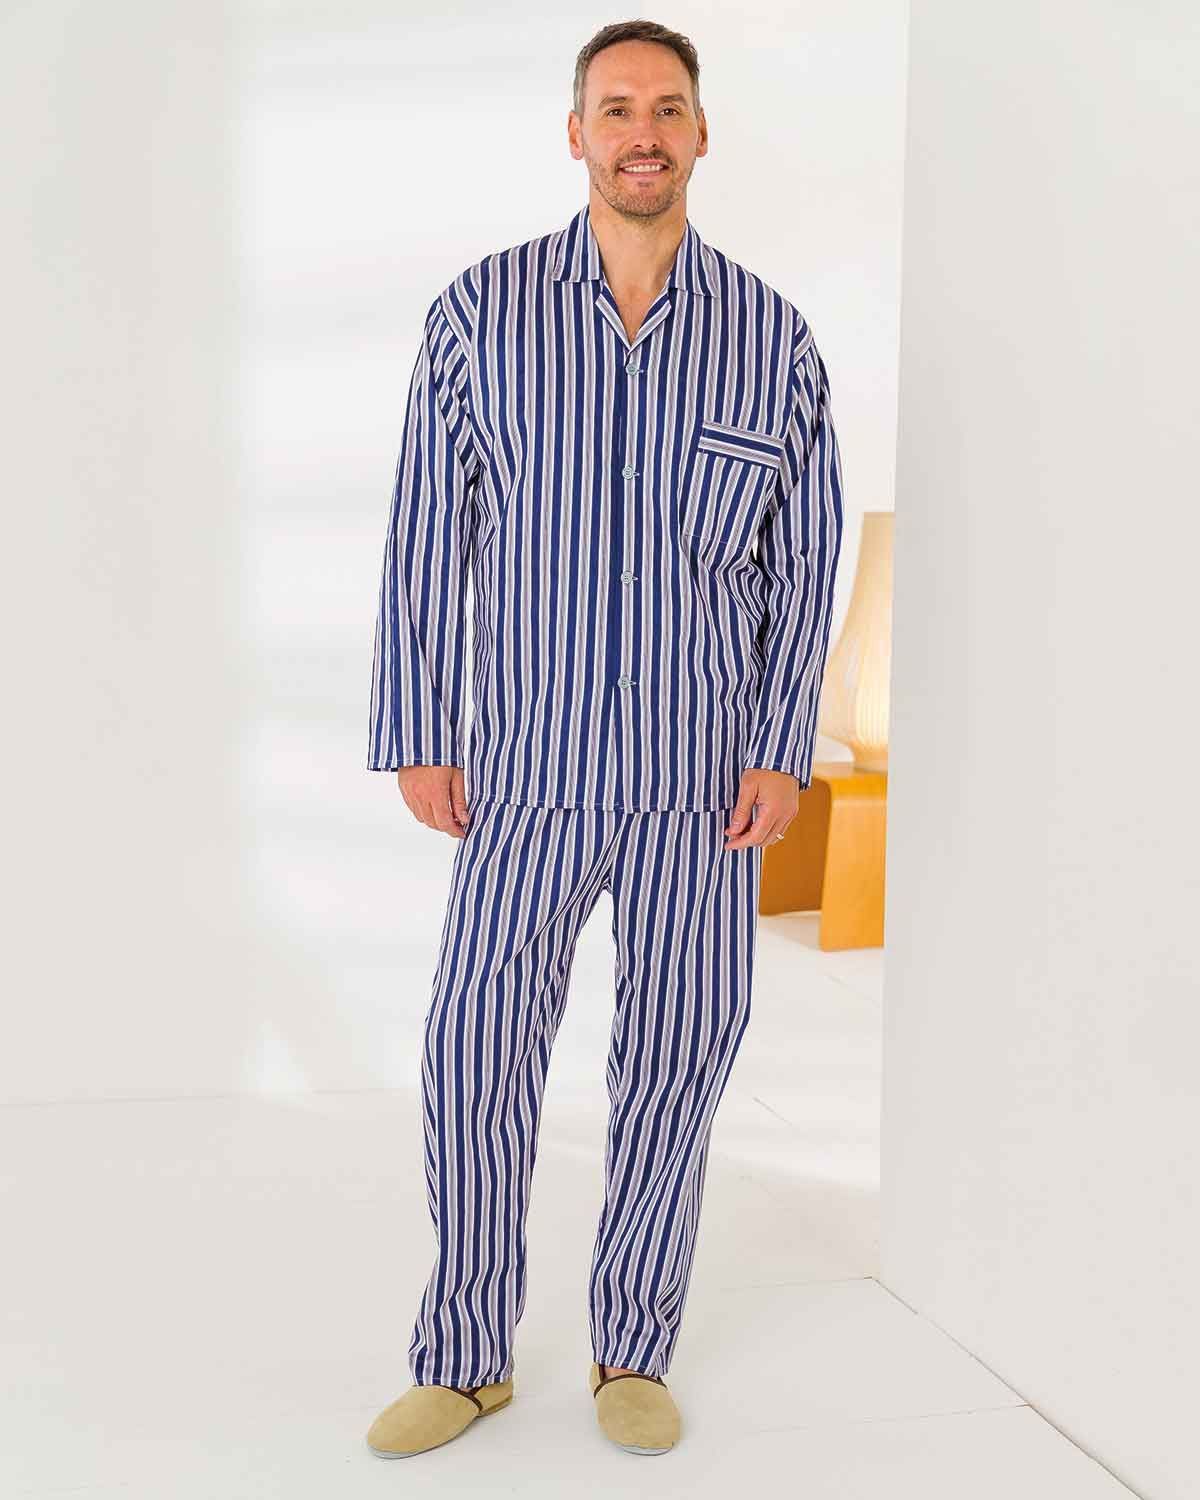 Traditional Mens Pyjamas, Mens Cotton Pyjamas, Cotton Pyjamas Men